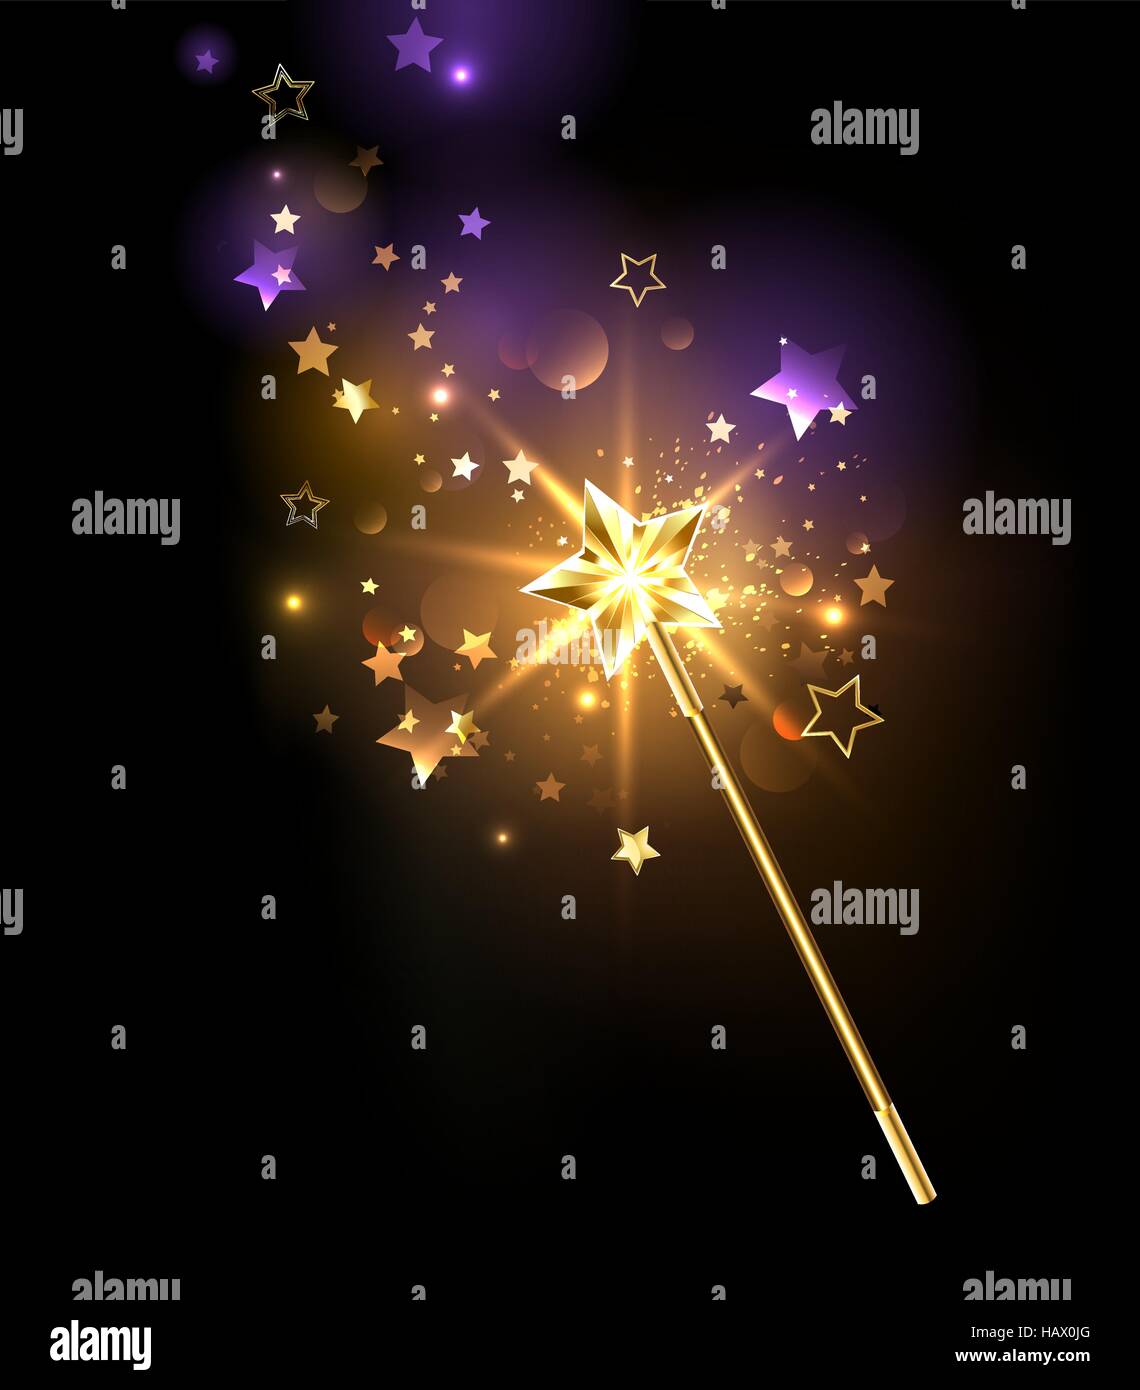 Zauberstab, verziert mit goldenen Sternen auf einem schwarzen Hintergrund Stock Vektor